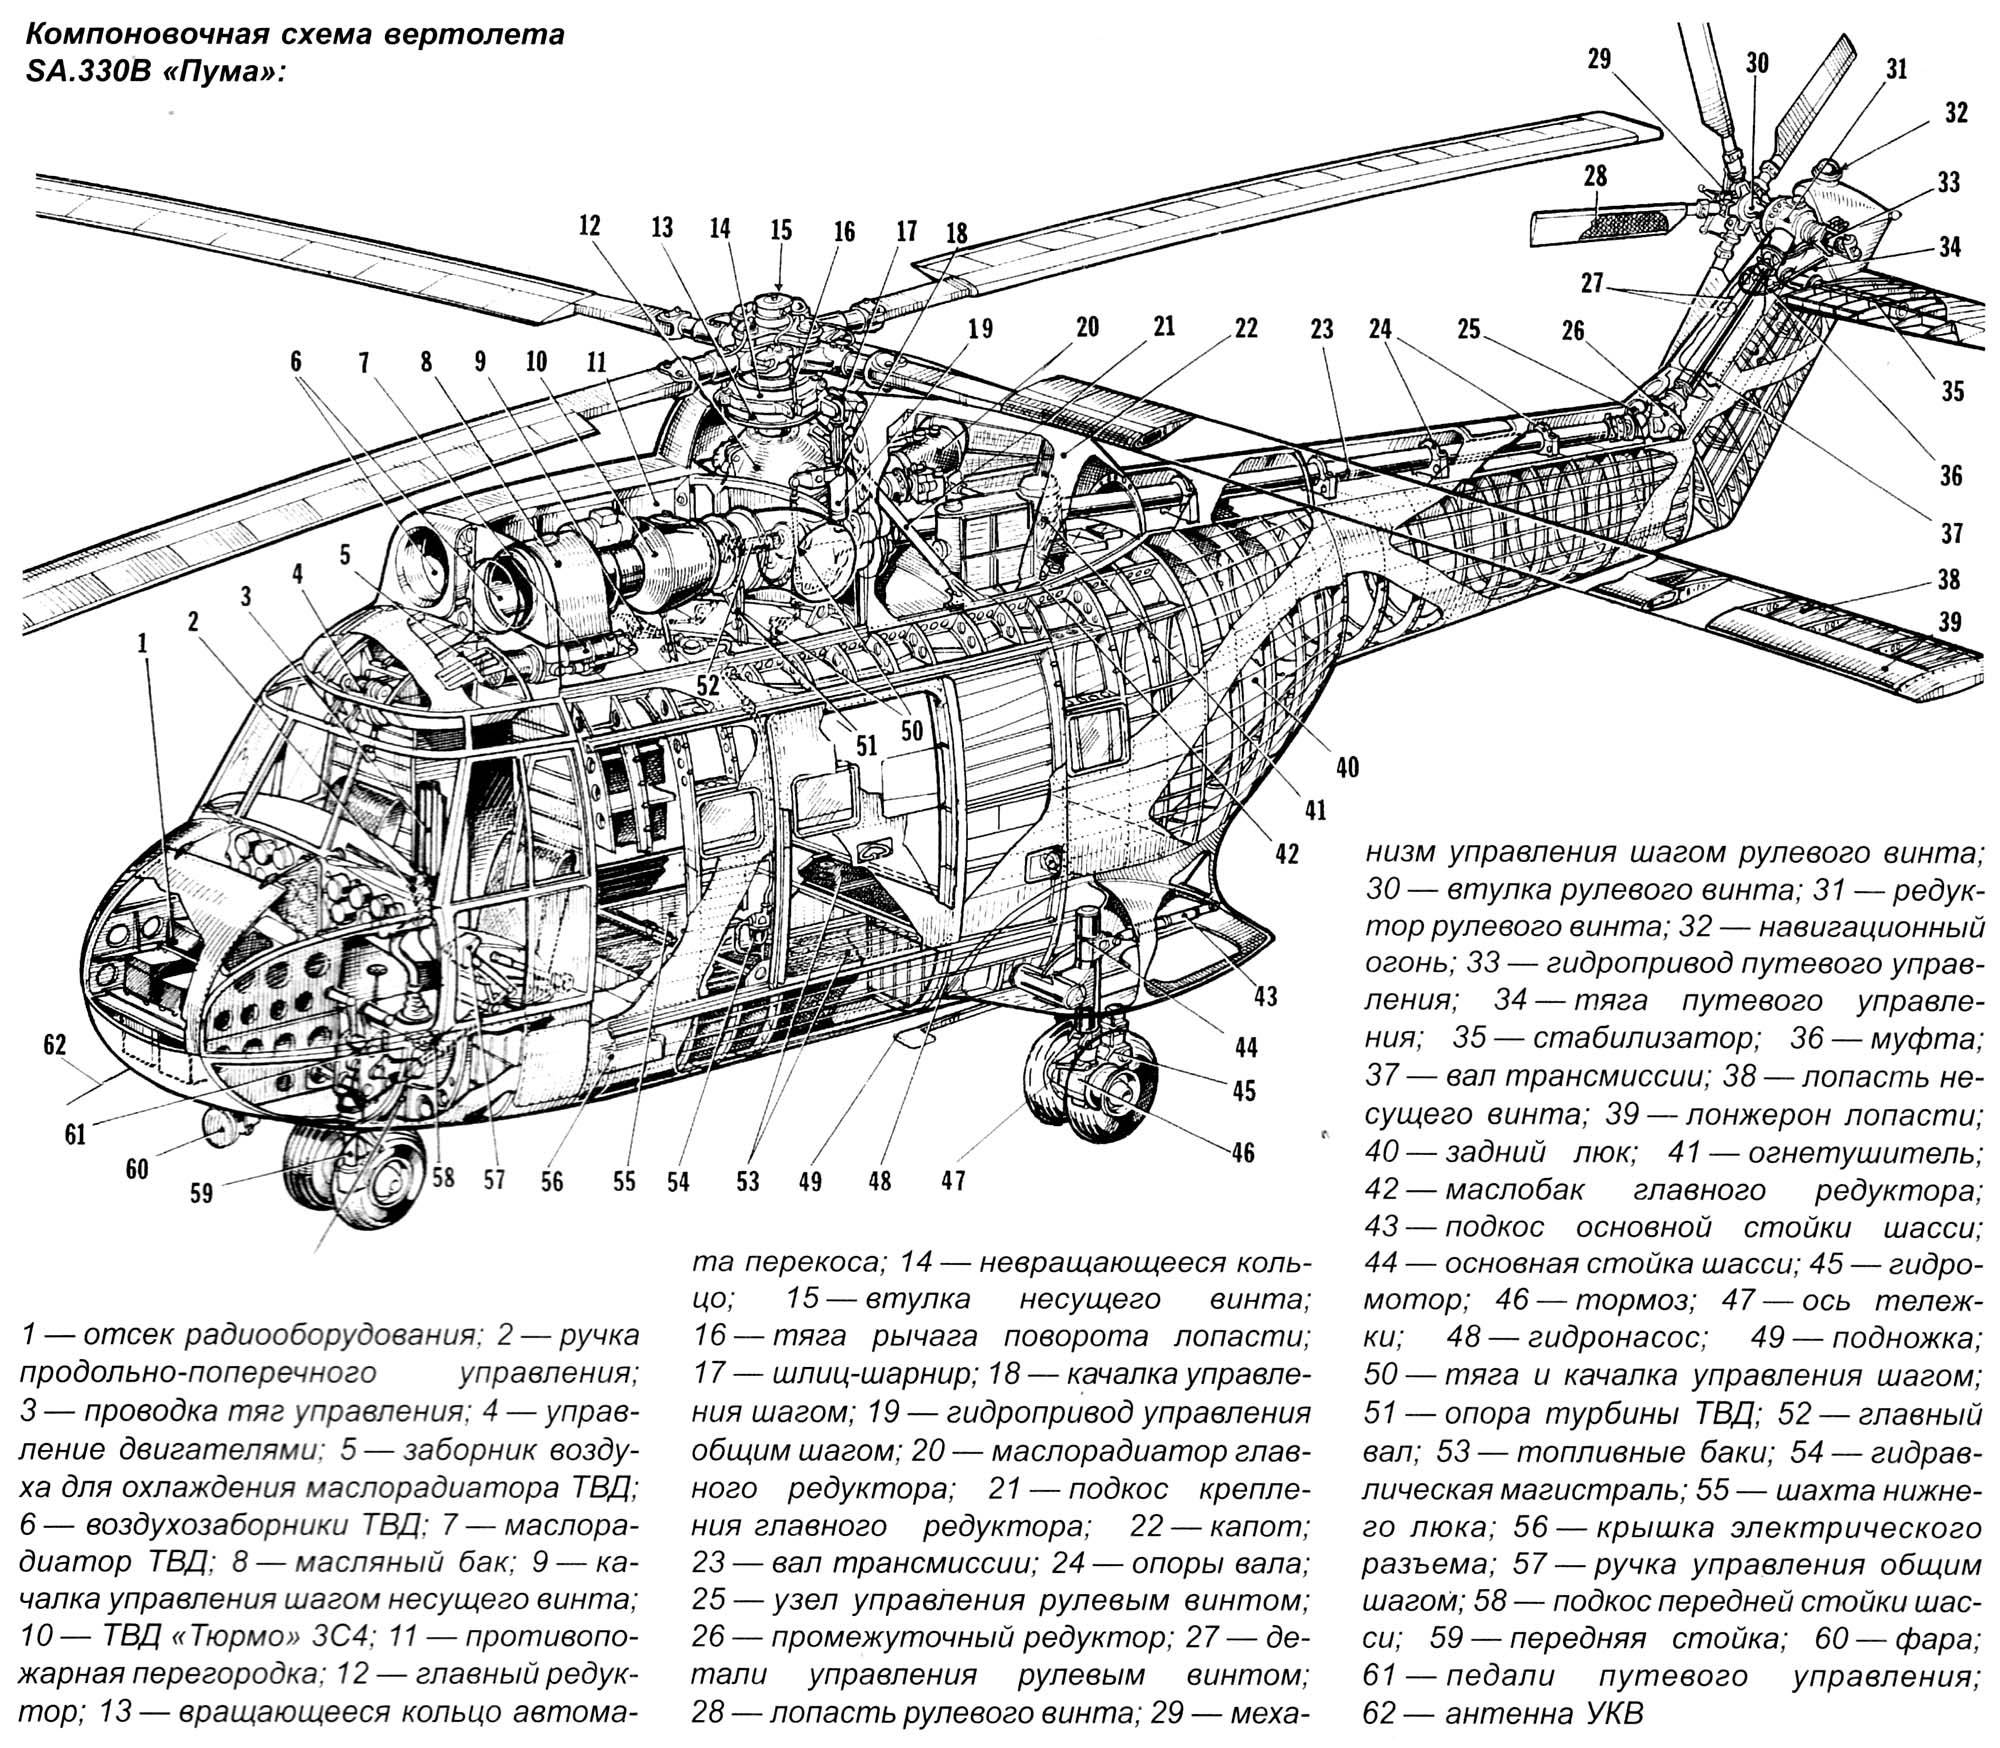 Ми-4 «гончая» — советский многоцелевой вертолёт